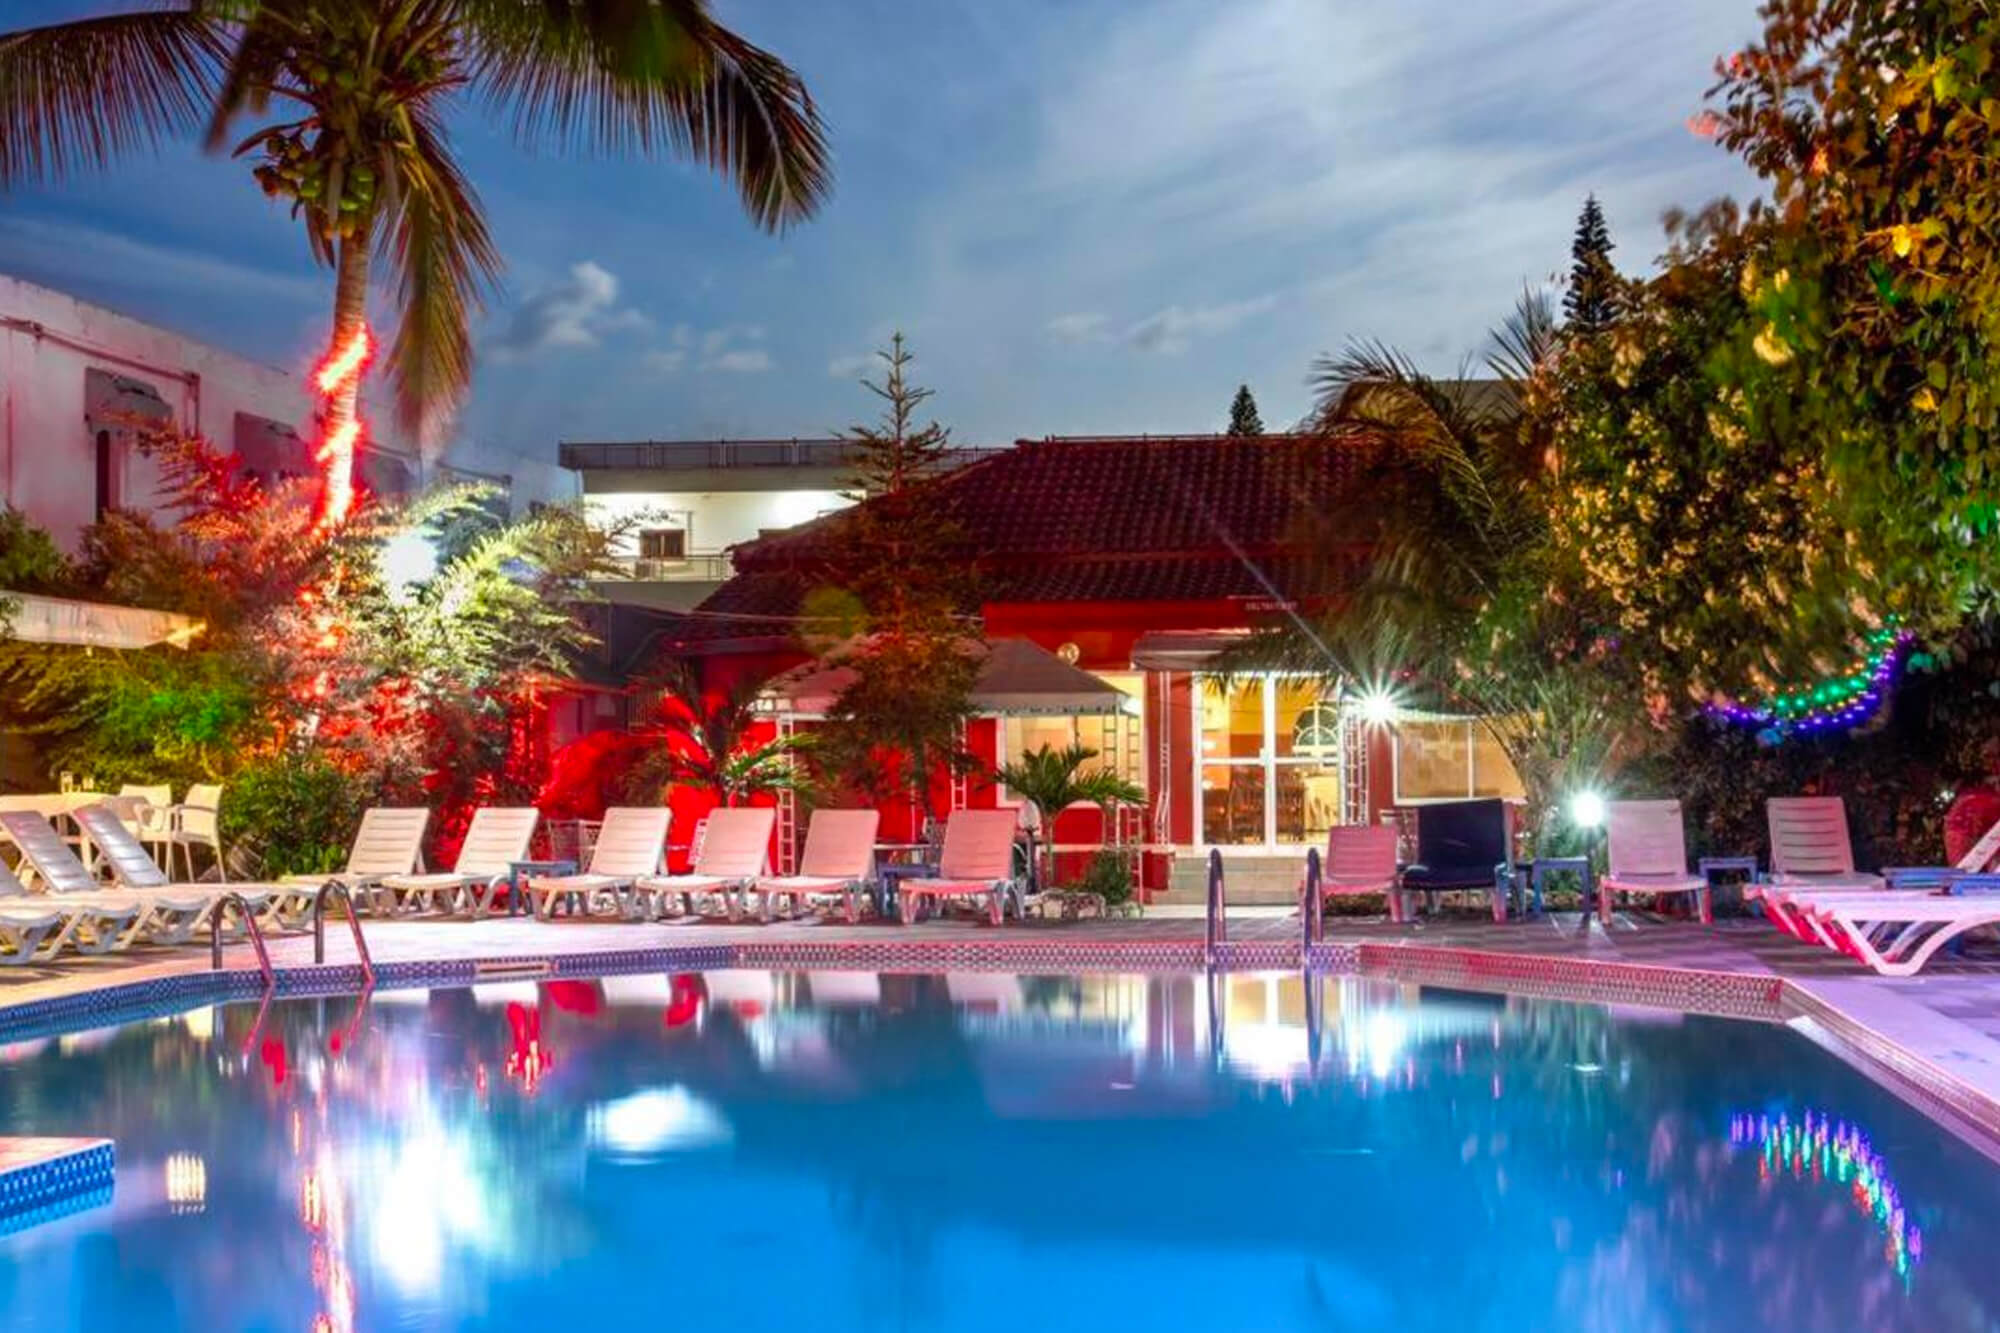 Zwembad van het Seaview Gardens hotel en resort in Gambia, Kololi in de avond